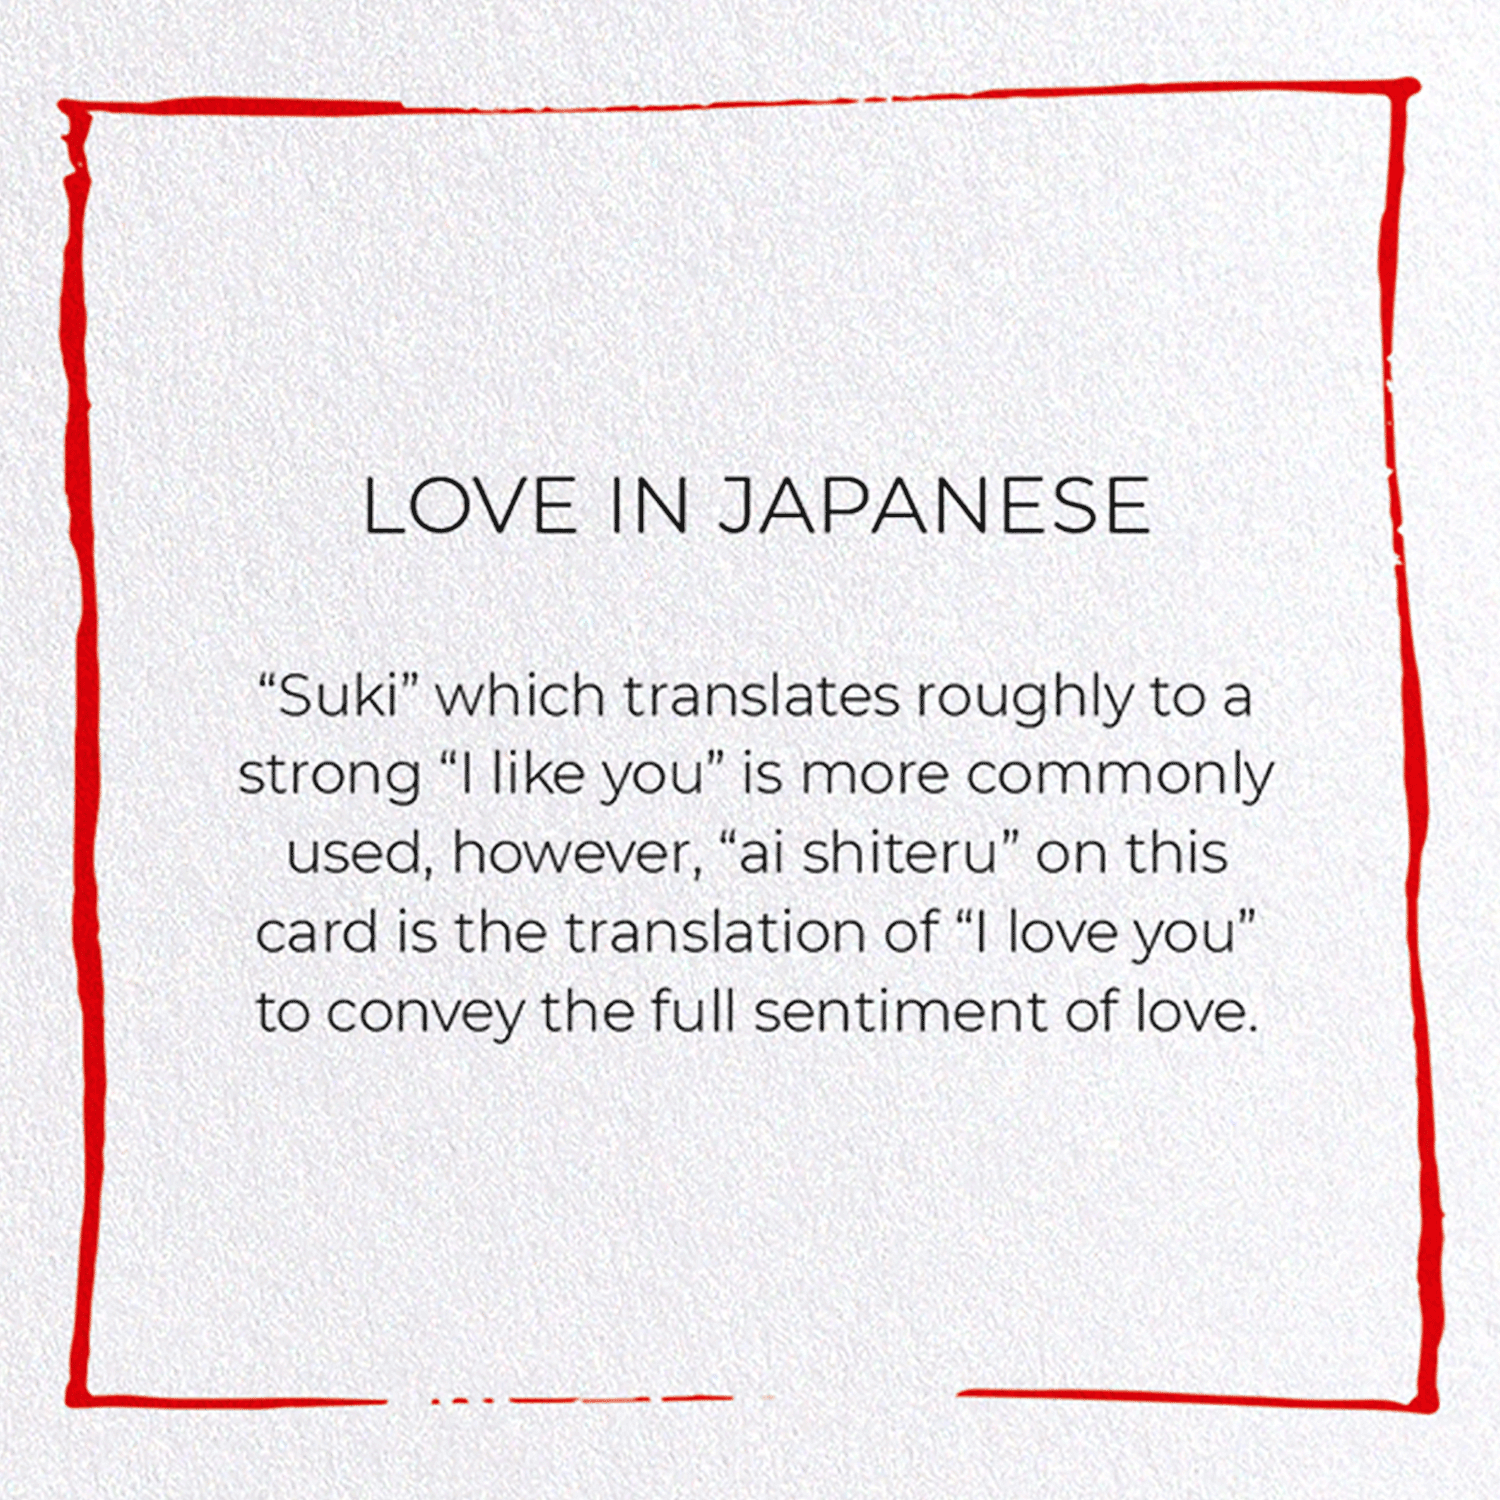 LOVE IN JAPANESE